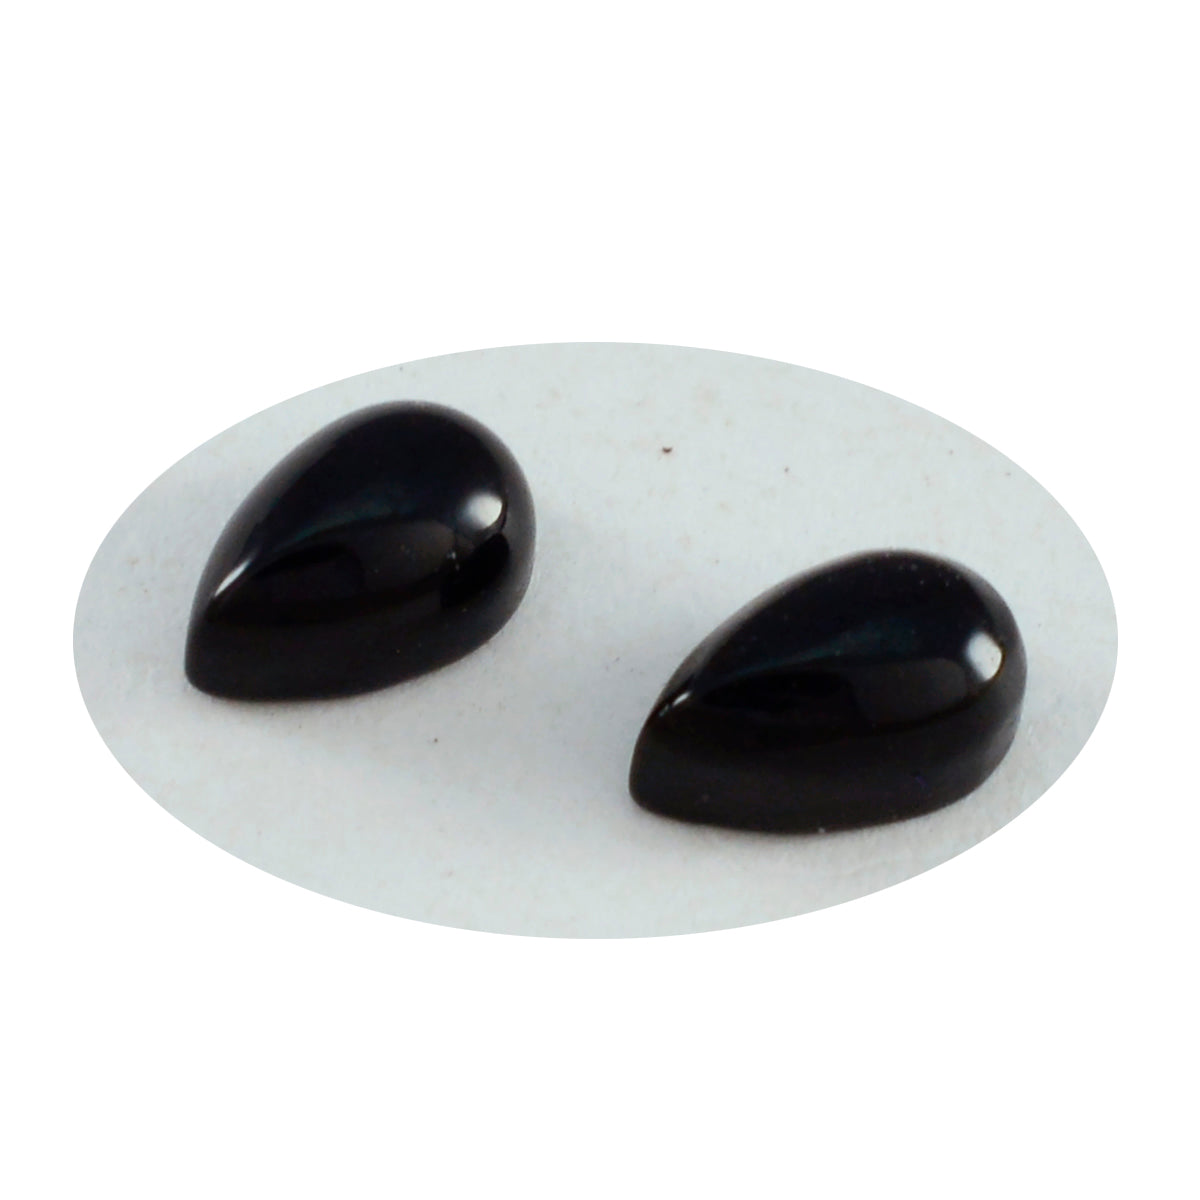 Riyogems 1 pieza cabujón de ónix negro 7x10 mm forma de pera gema de calidad increíble